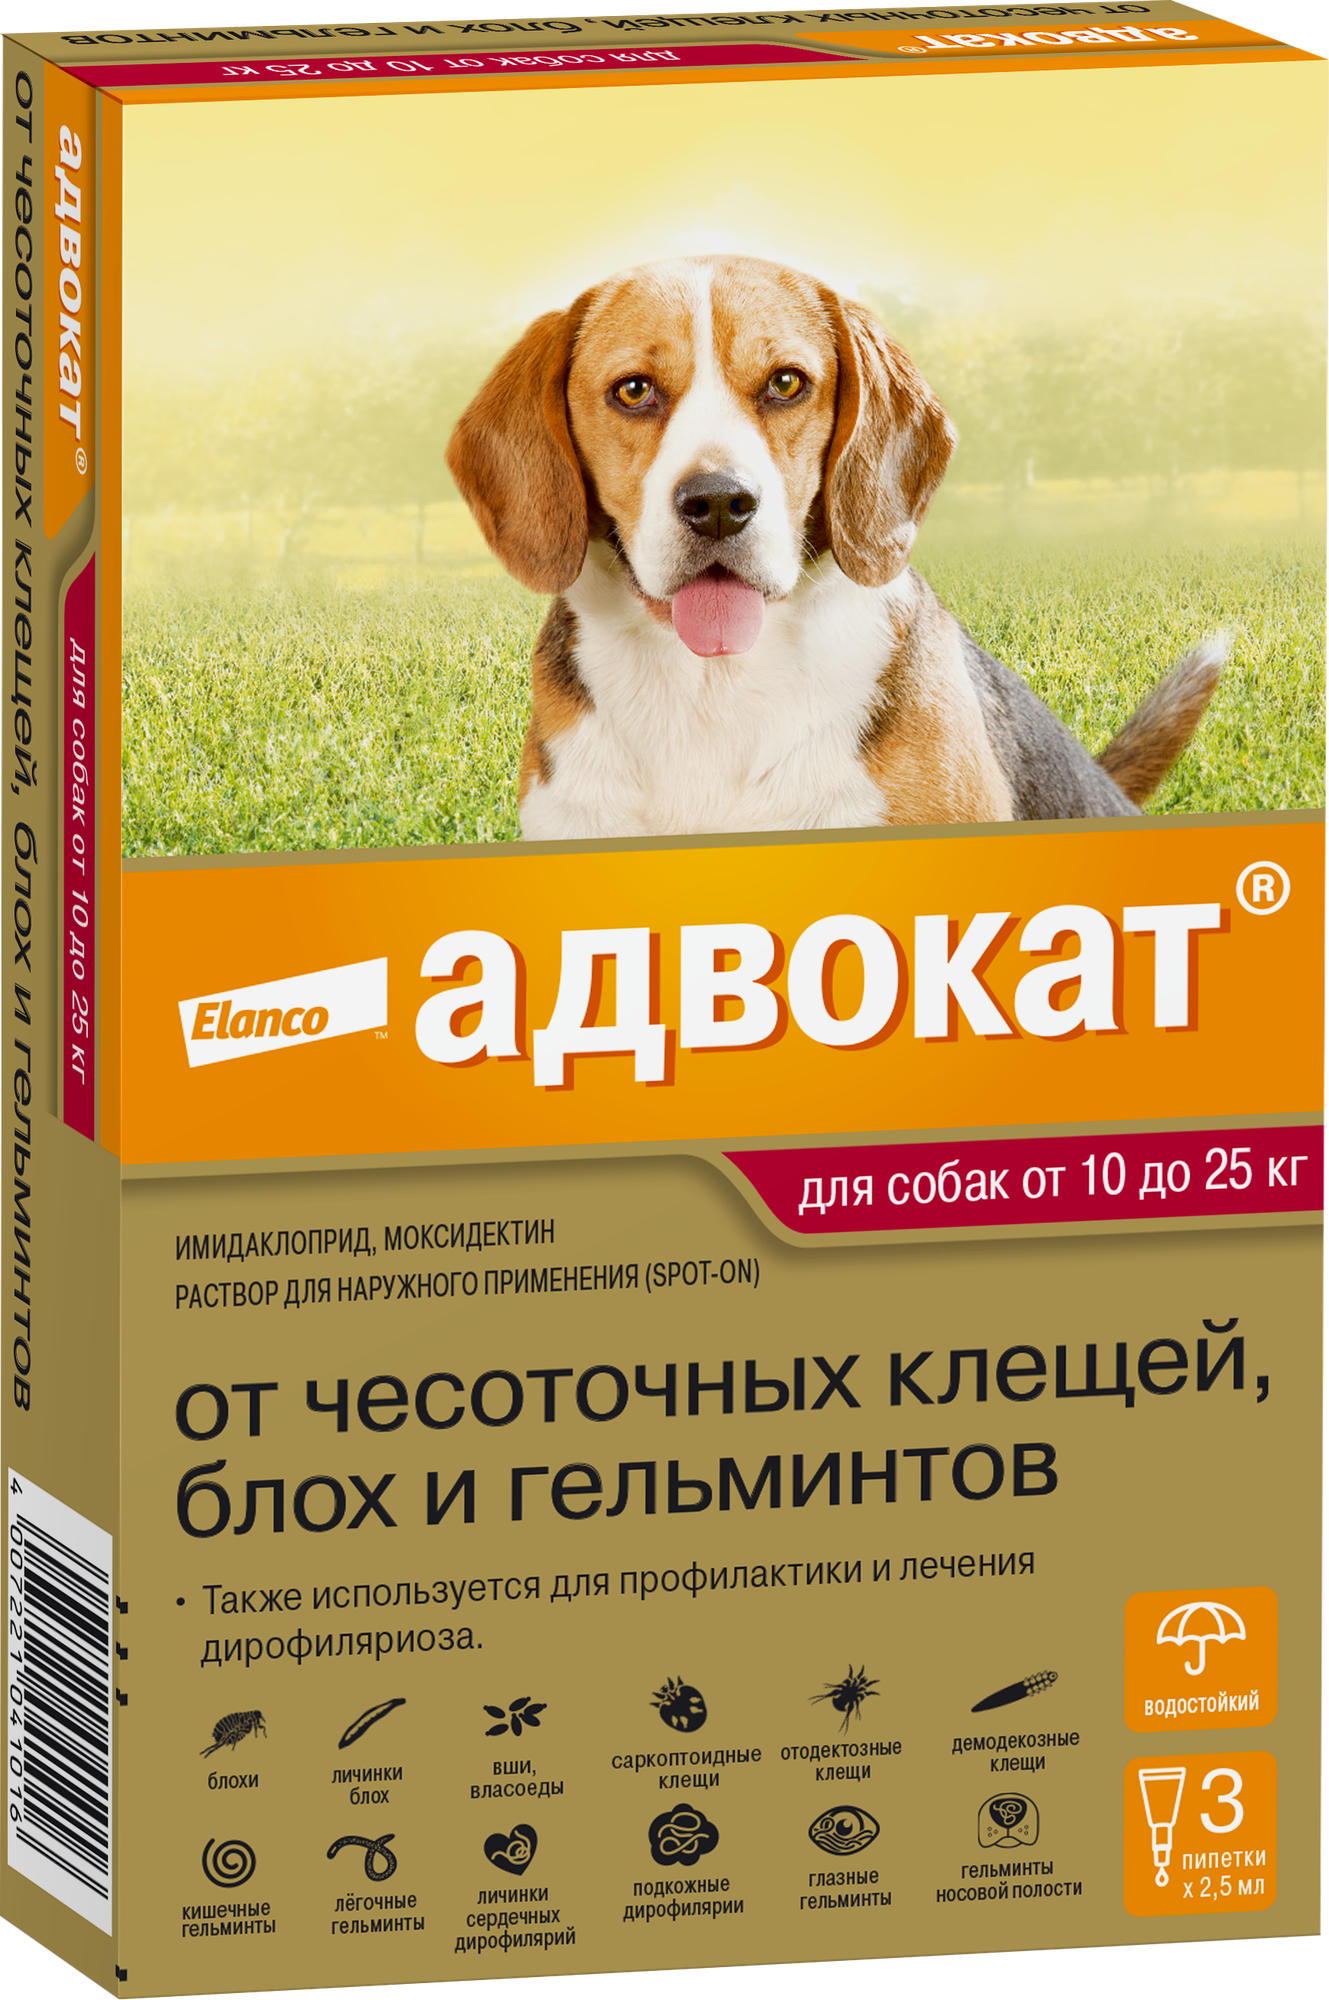 Адвокат (Elanco) капли на холку от чесоточных клещей, блох и гельминтов для собак от 10 до 25кг – 3 пипетки